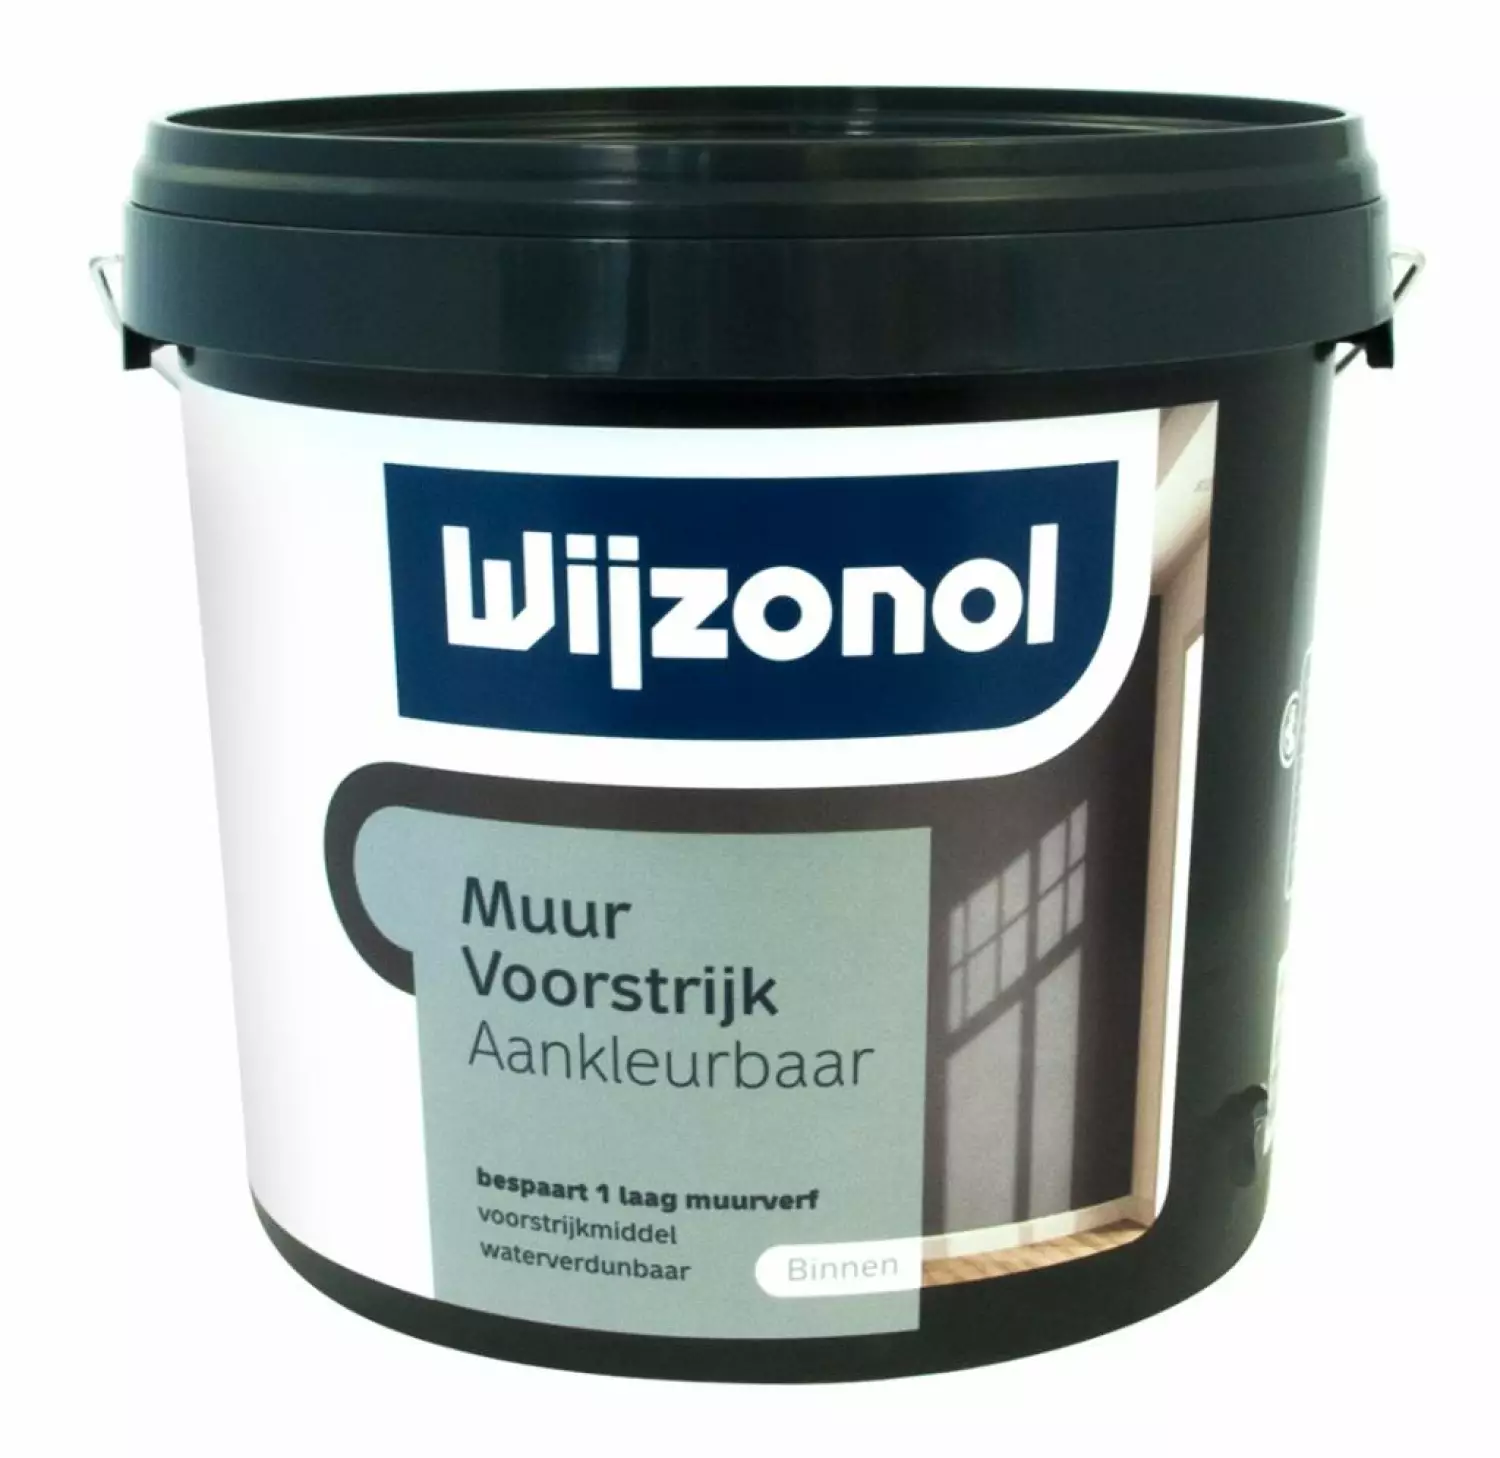 Wijzonol Muurvoorstrijk Aankleurbaar - op kleur gemengd - 5L-image